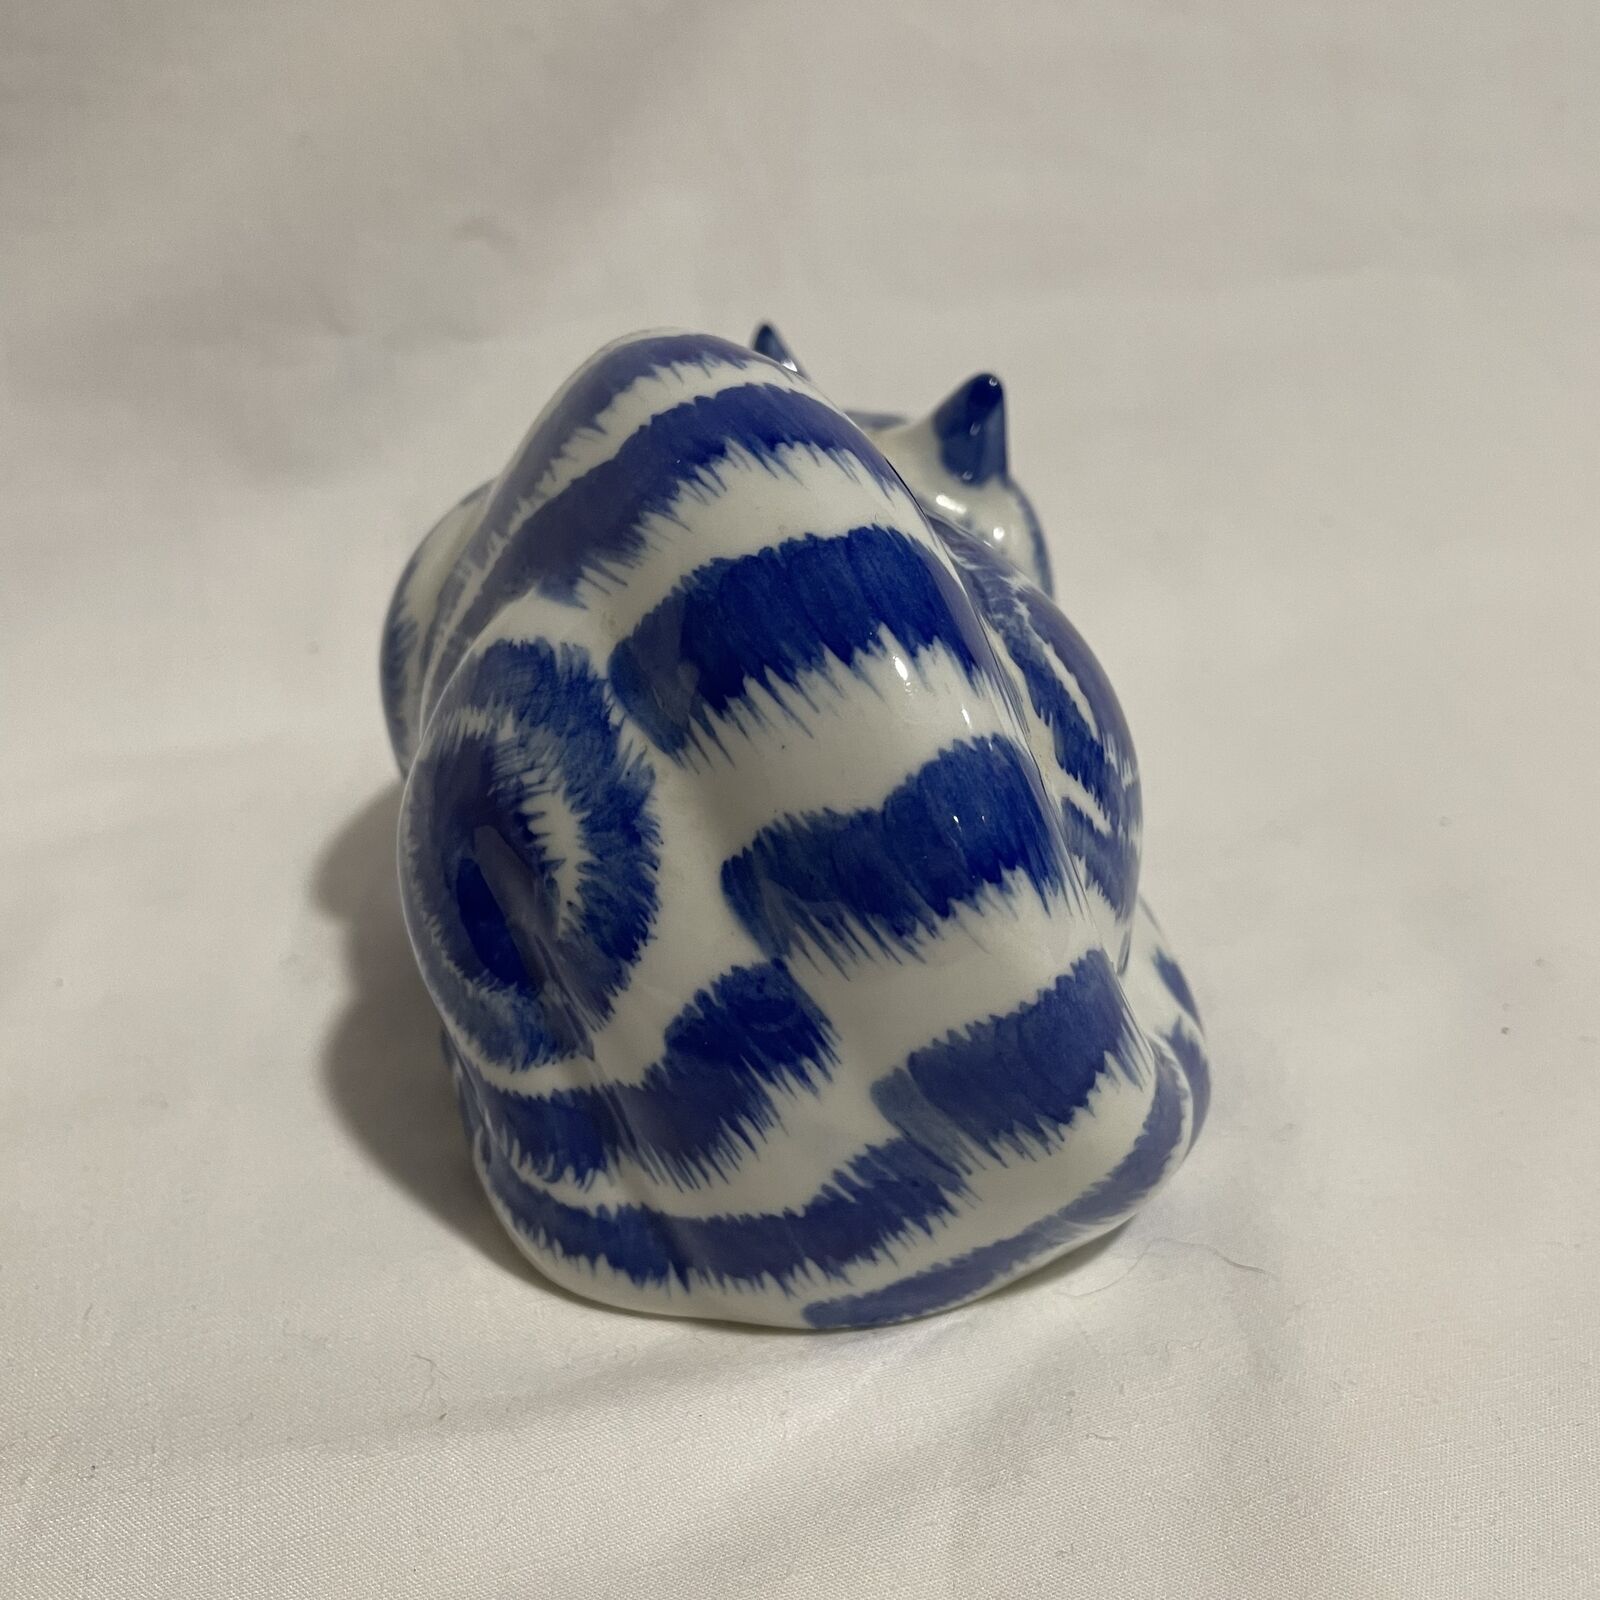 Blue Striped Cat Ceramic Figurine, Cat Sculpture